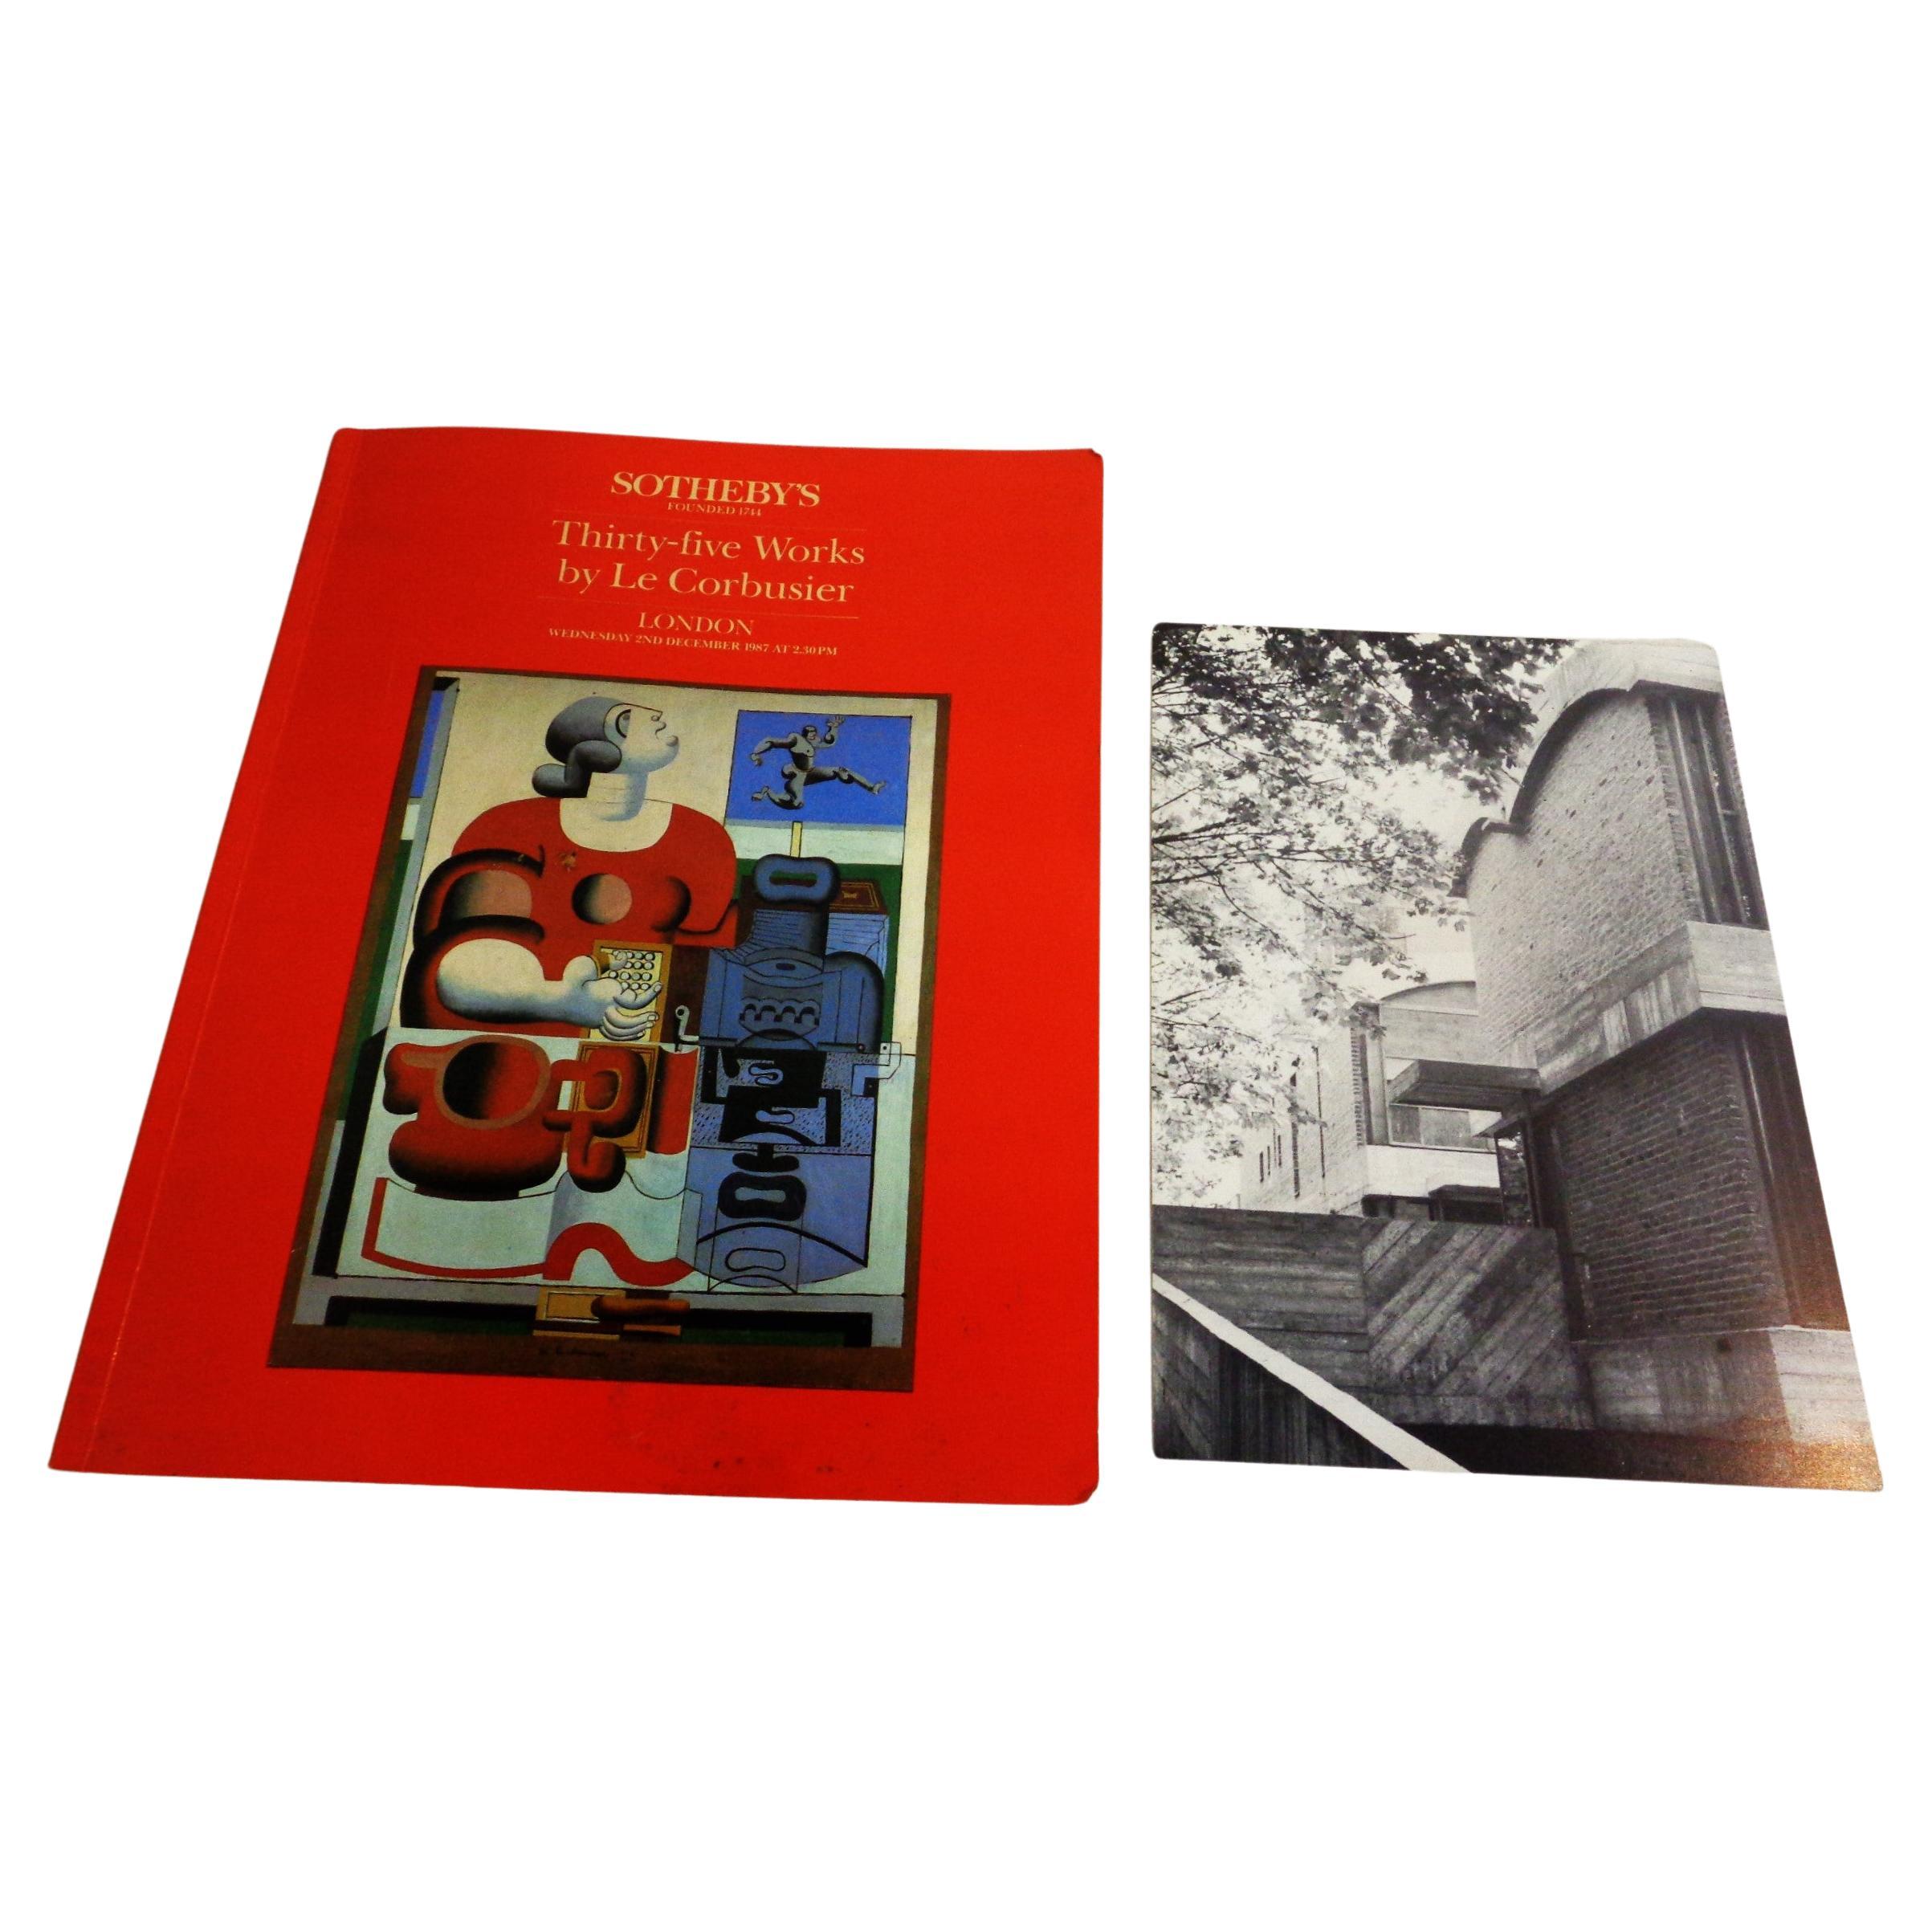 Trente-cinq œuvres de Le Corbusier - 8 décembre 1987 Sotheby's, Londres - Catalogue de vente aux enchères à couverture souple avec carte - Sotheby's International Realty & Le Corbusier  - Les Maisons Jaoul, Neuilly-sur-Seine, Paris. 56 pages avec 35